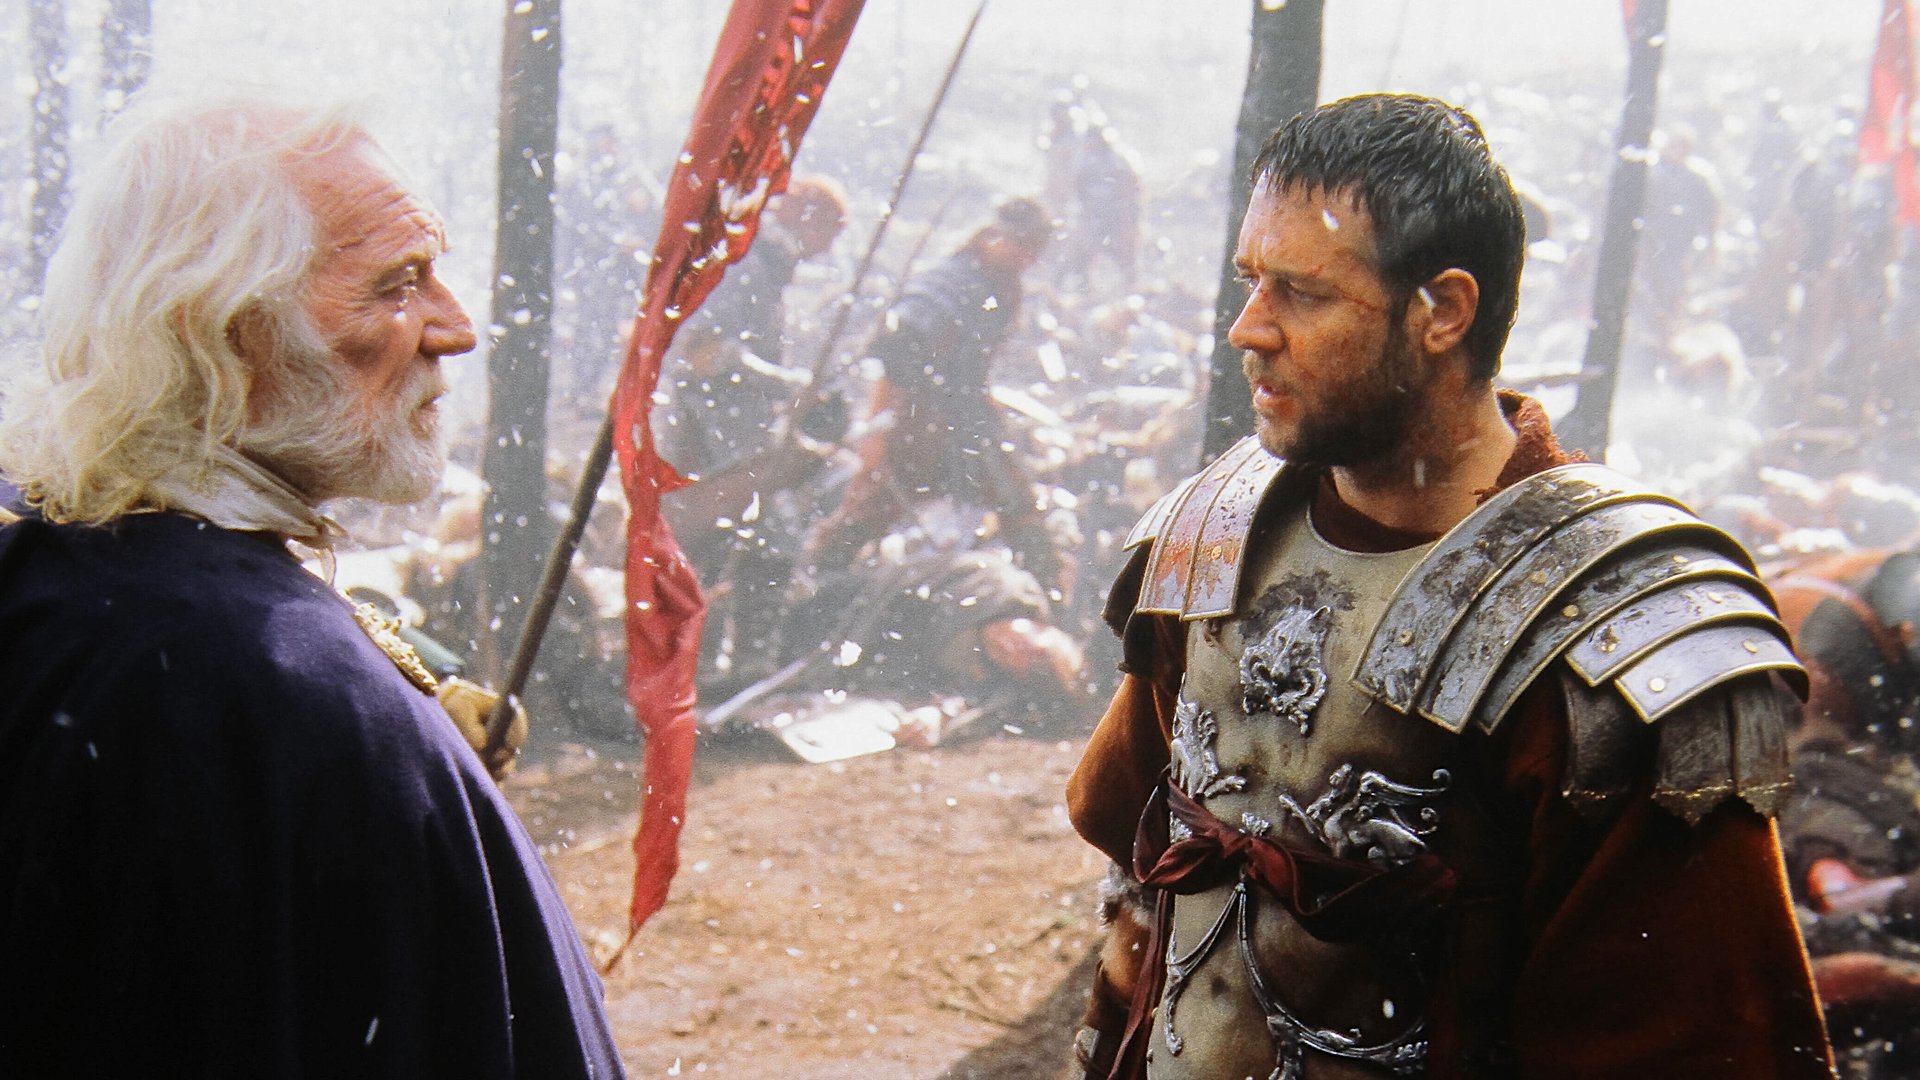 #„Gladiator 2“ soll einige der größten Actionszenen der Leinwandgeschichte haben